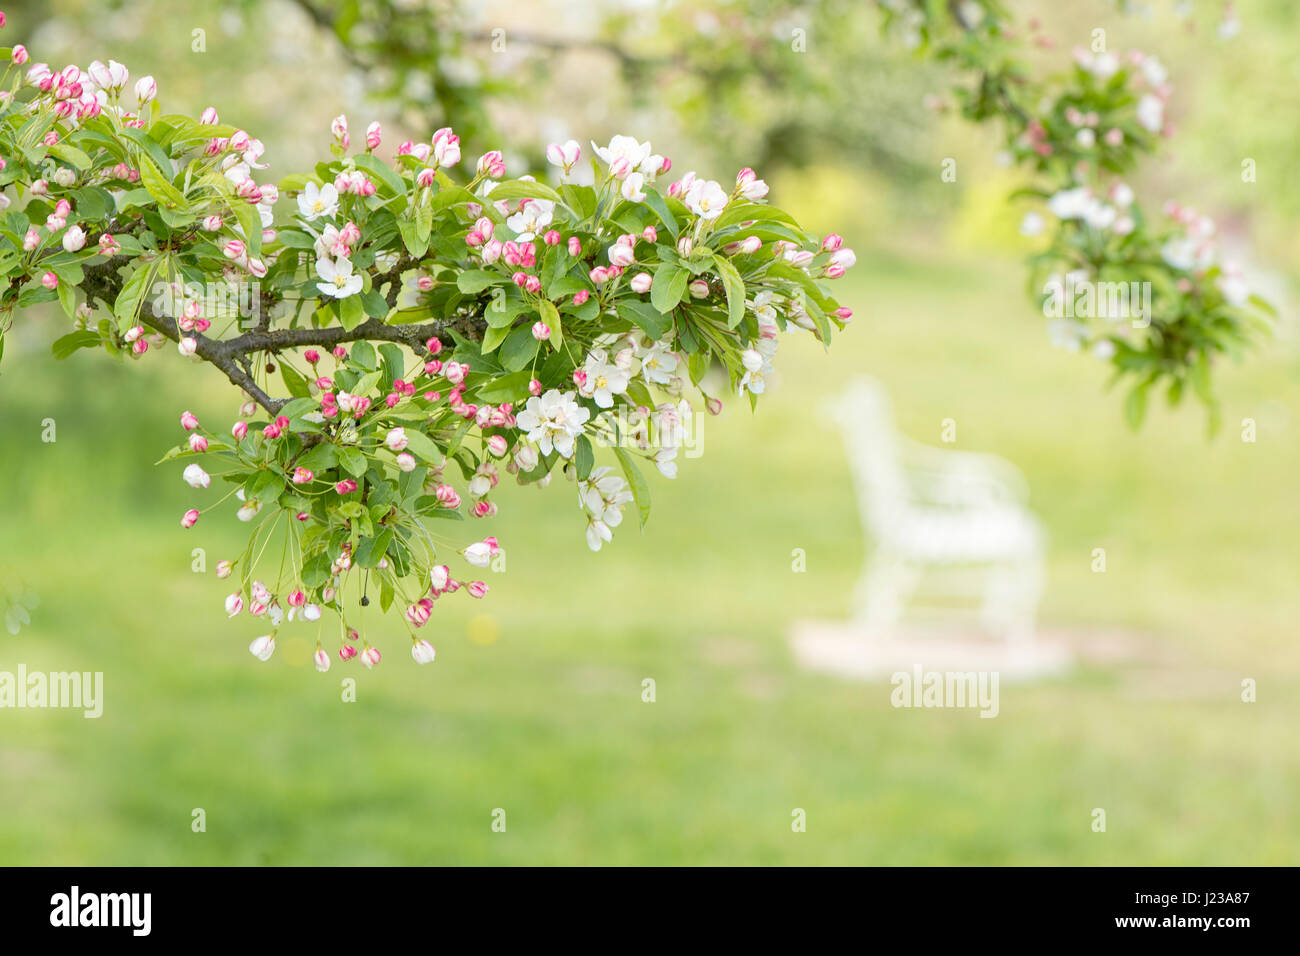 Nahaufnahme Bild der feinen, weißen und rosa Apfelblüten mit einer weißen Bank im Hintergrund. Stockfoto